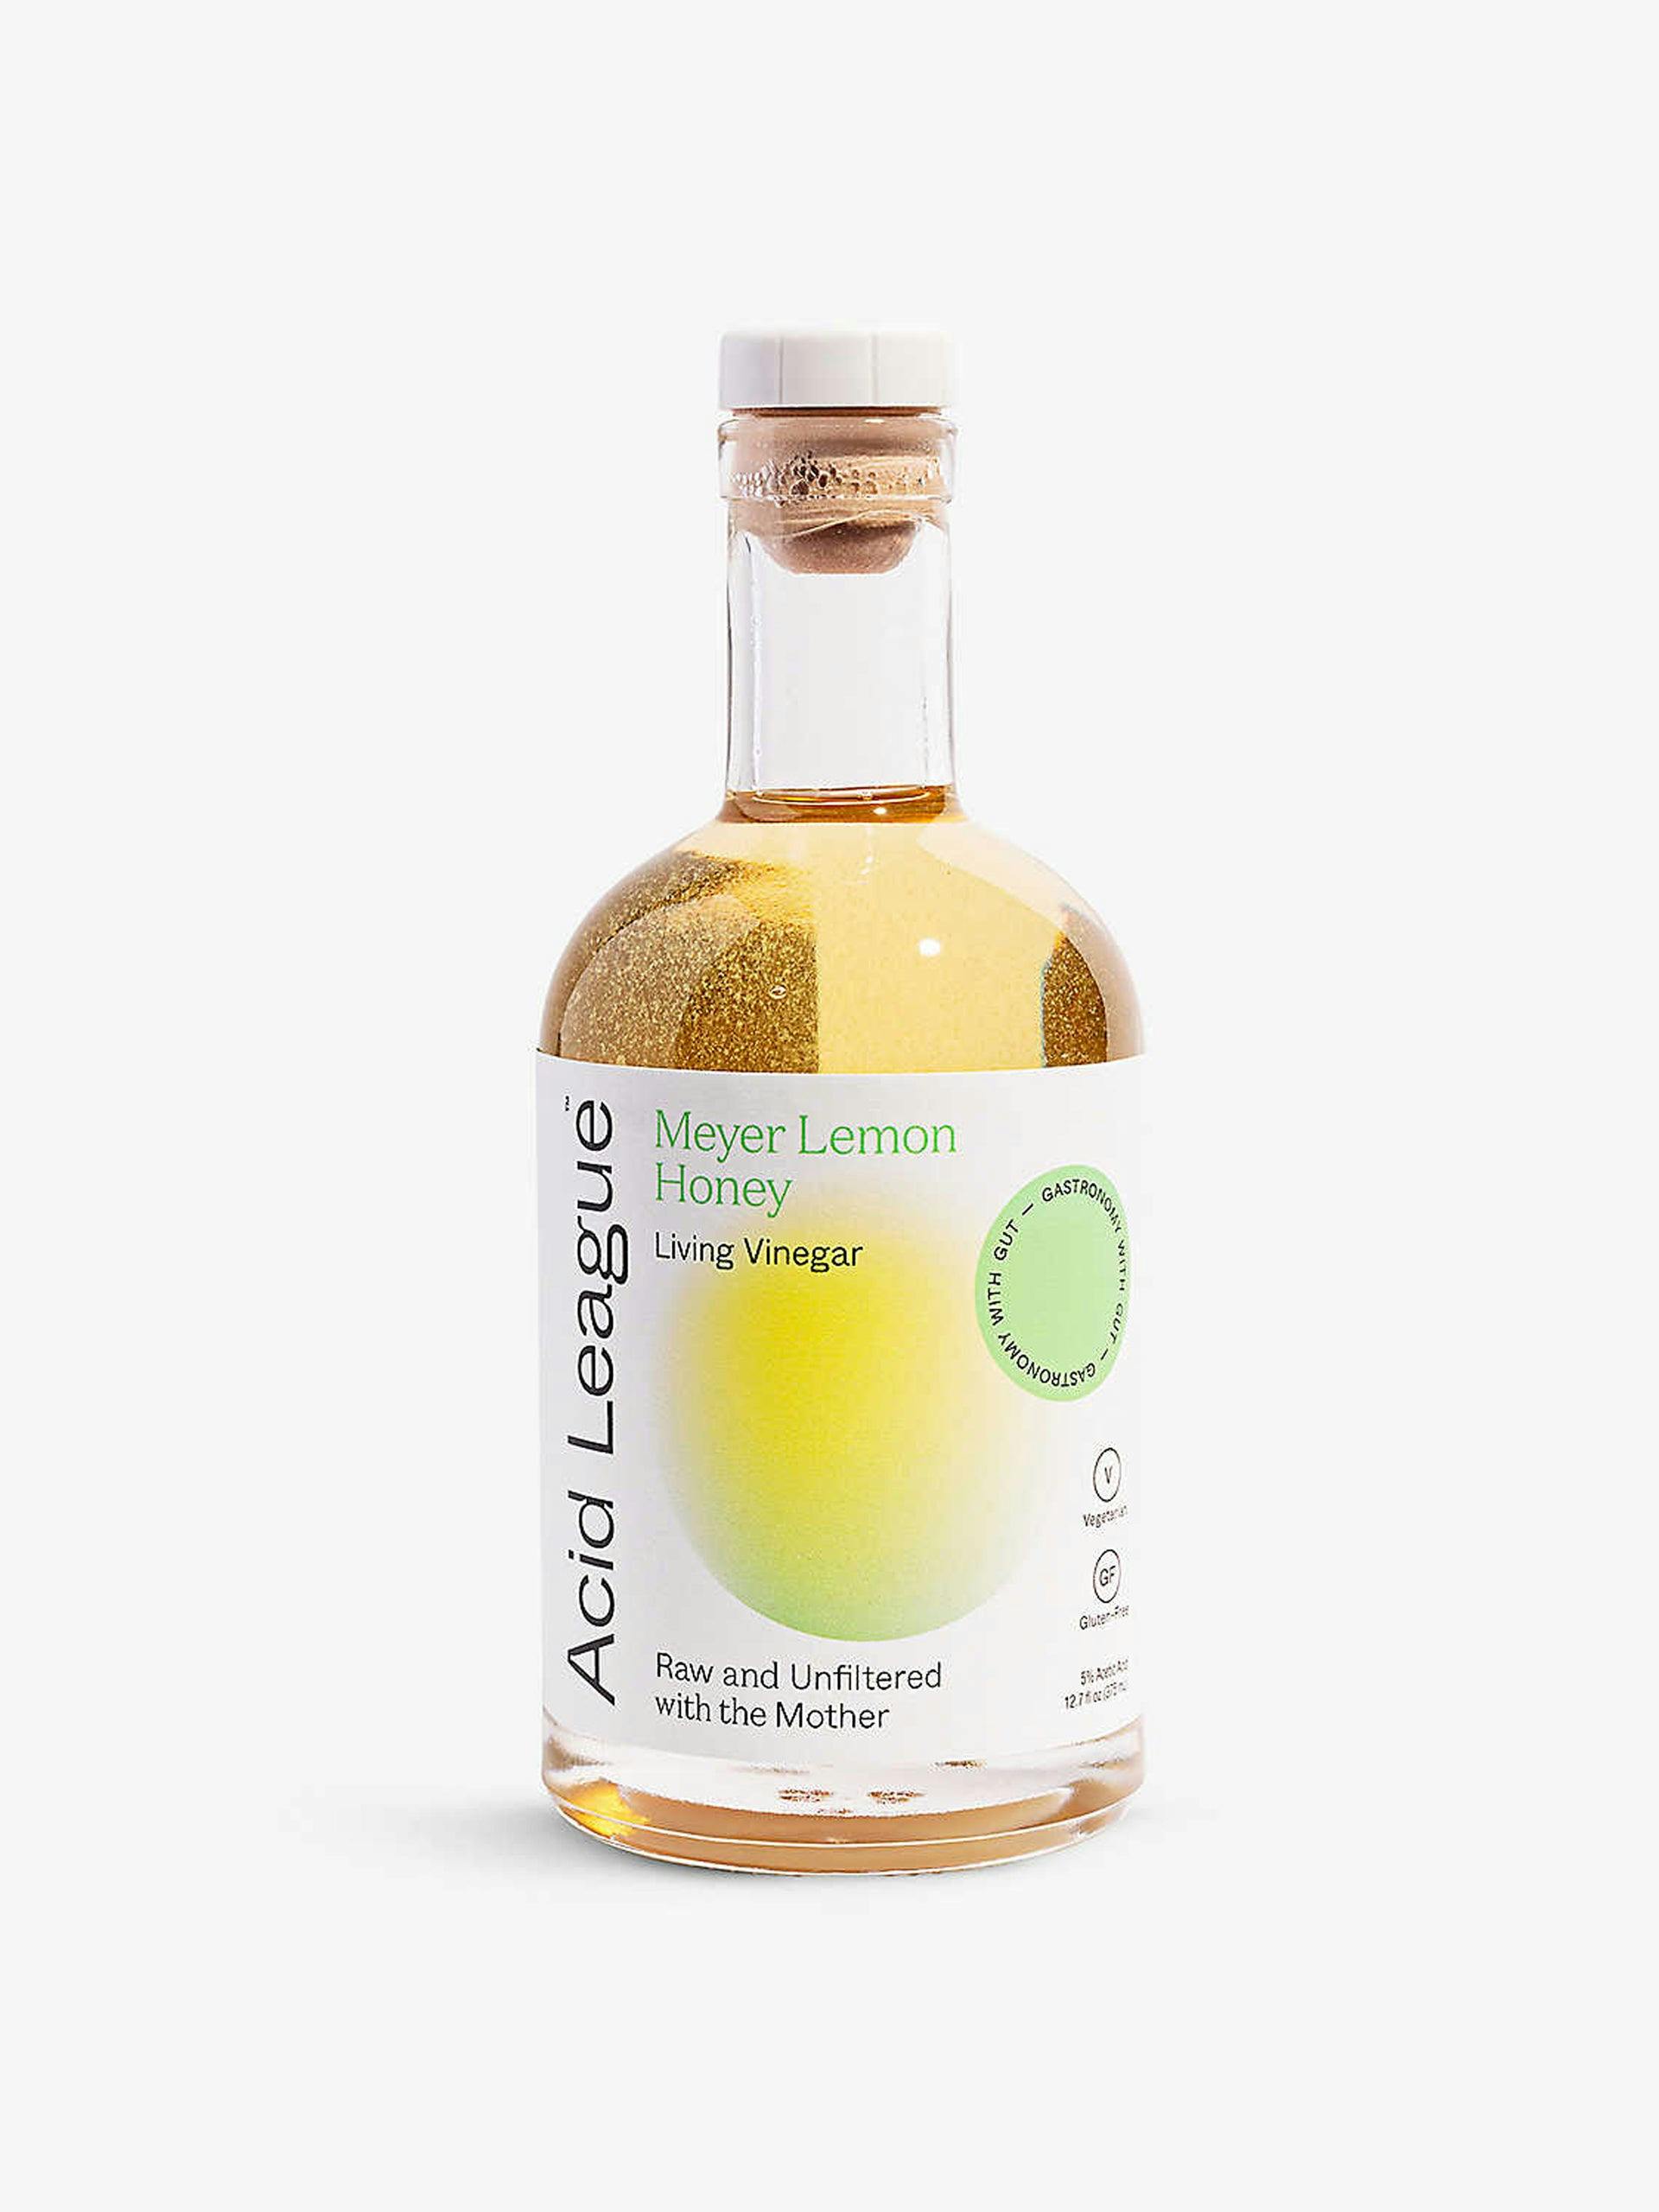 Meyer Lemon Honey living vinegar